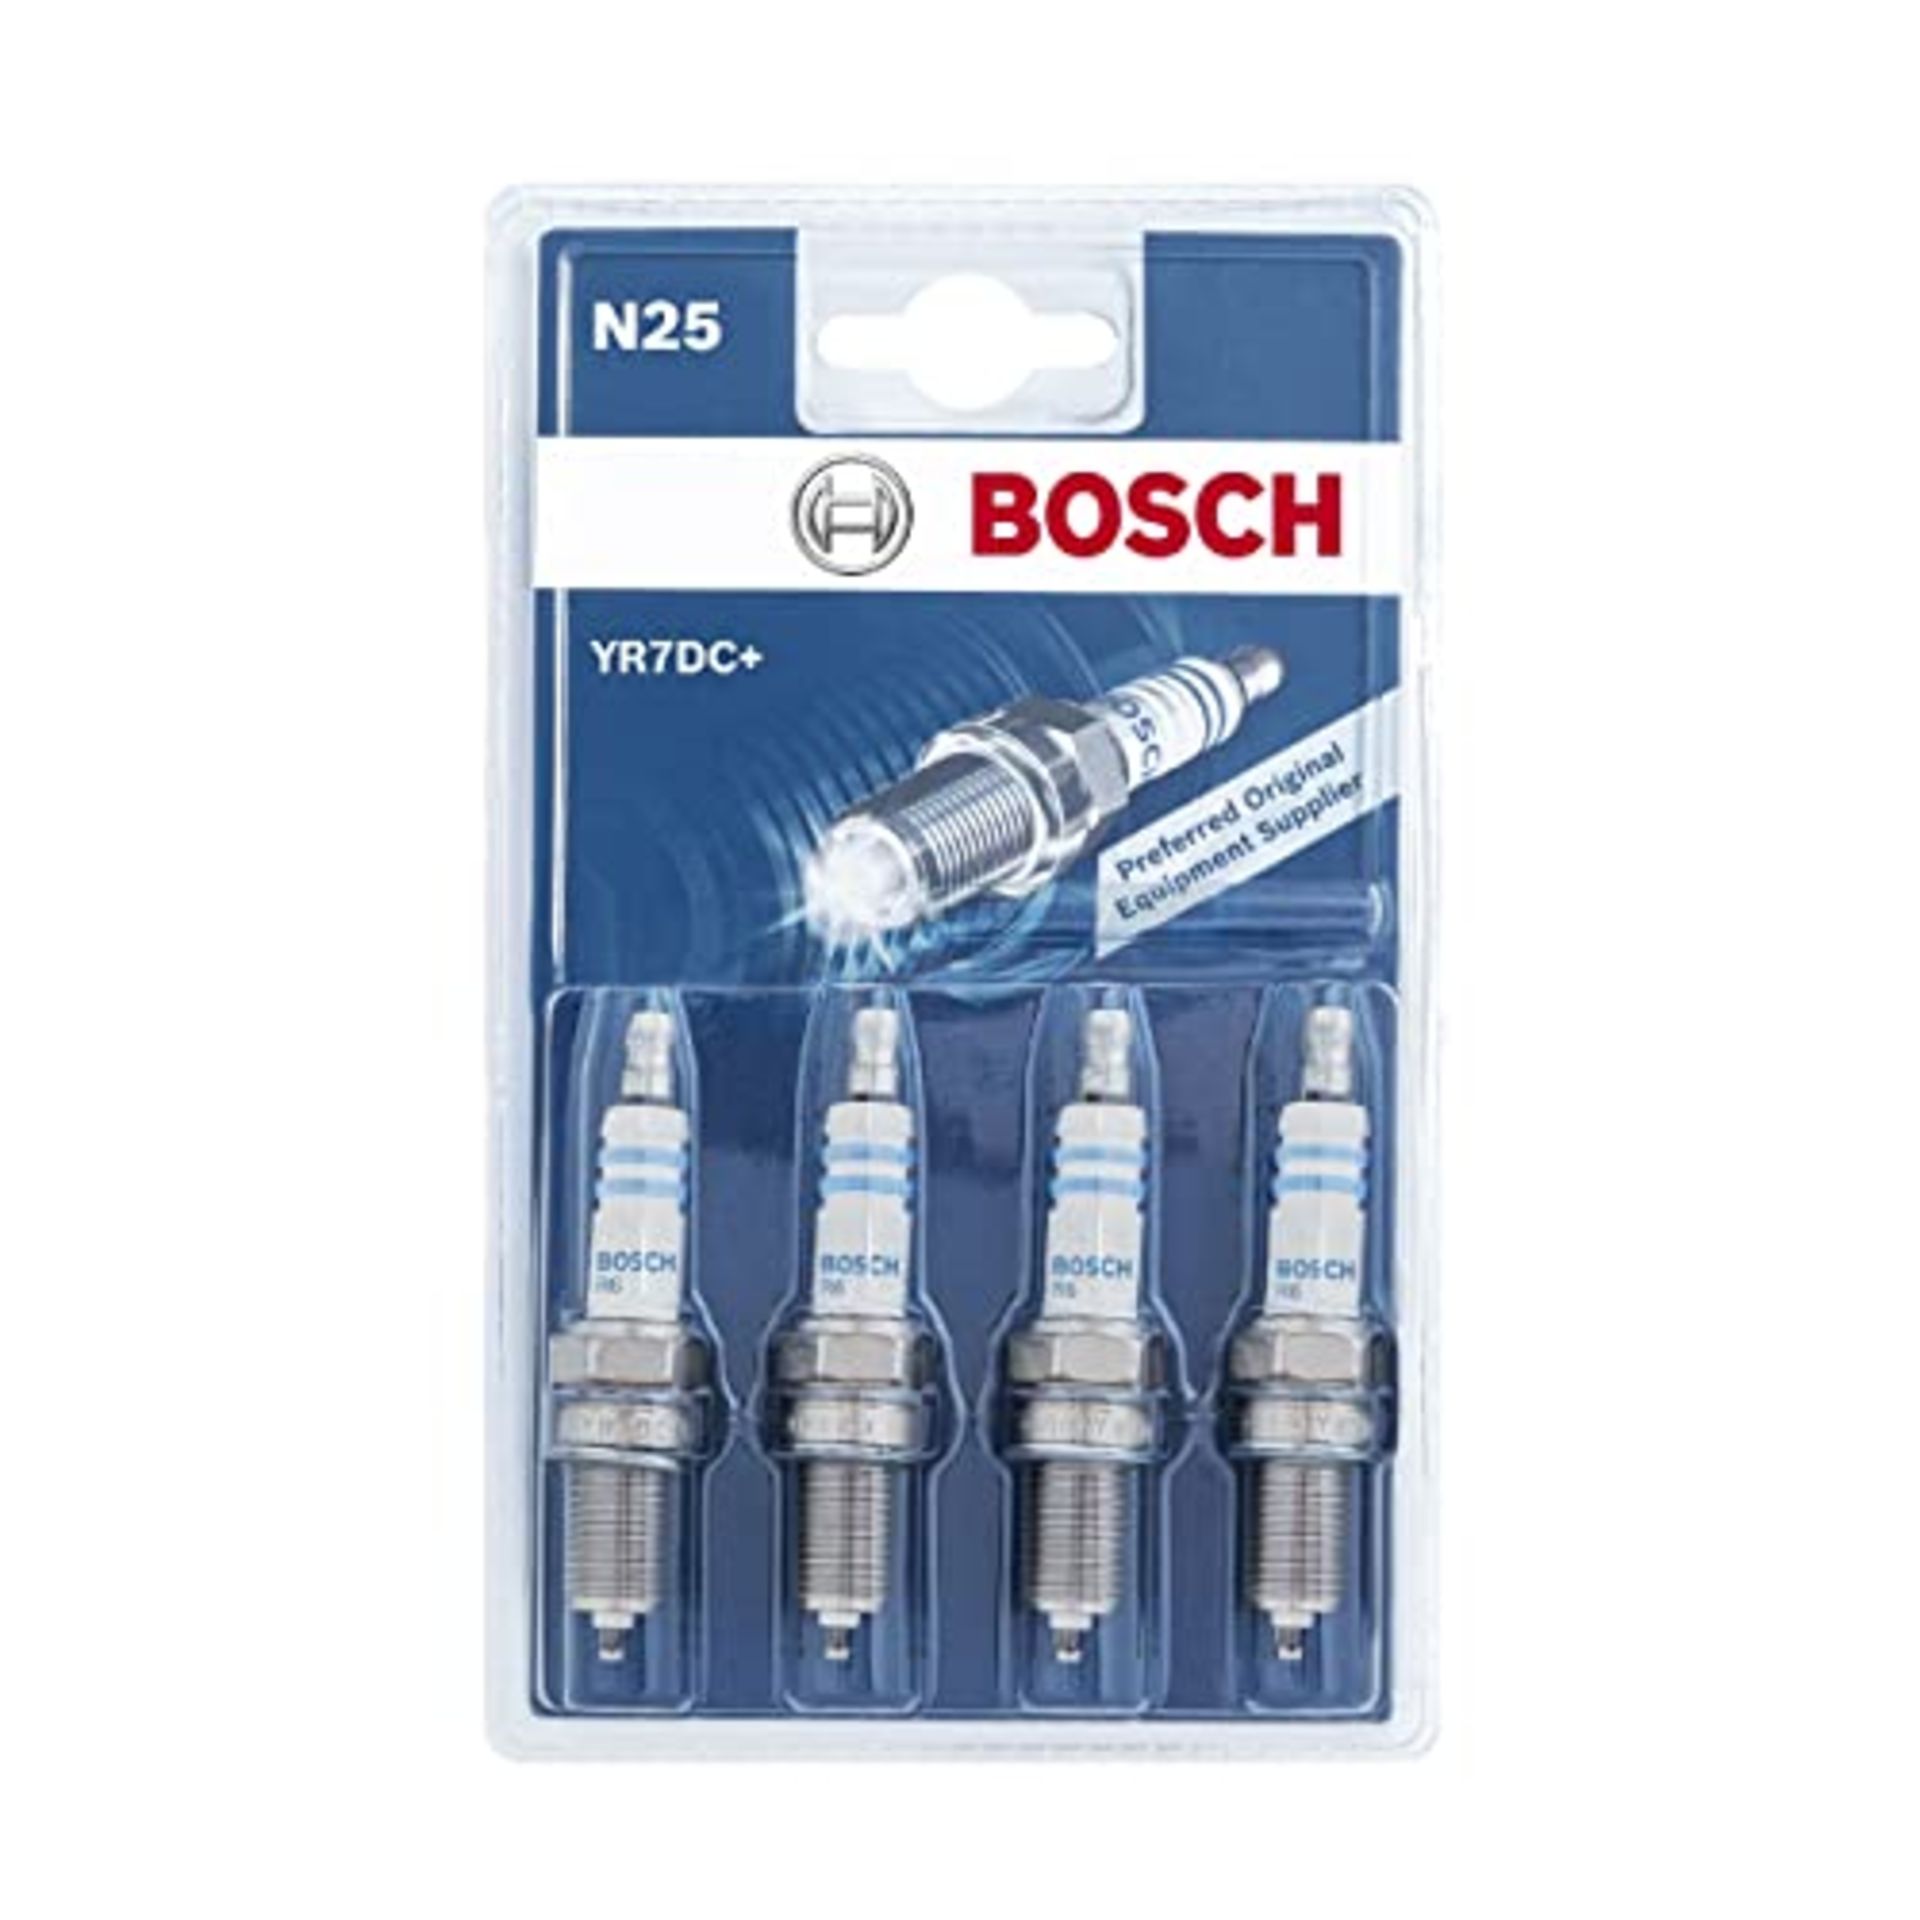 Bosch YR7DC+ (N25) - Spark Plugs Nickel - Set of 4